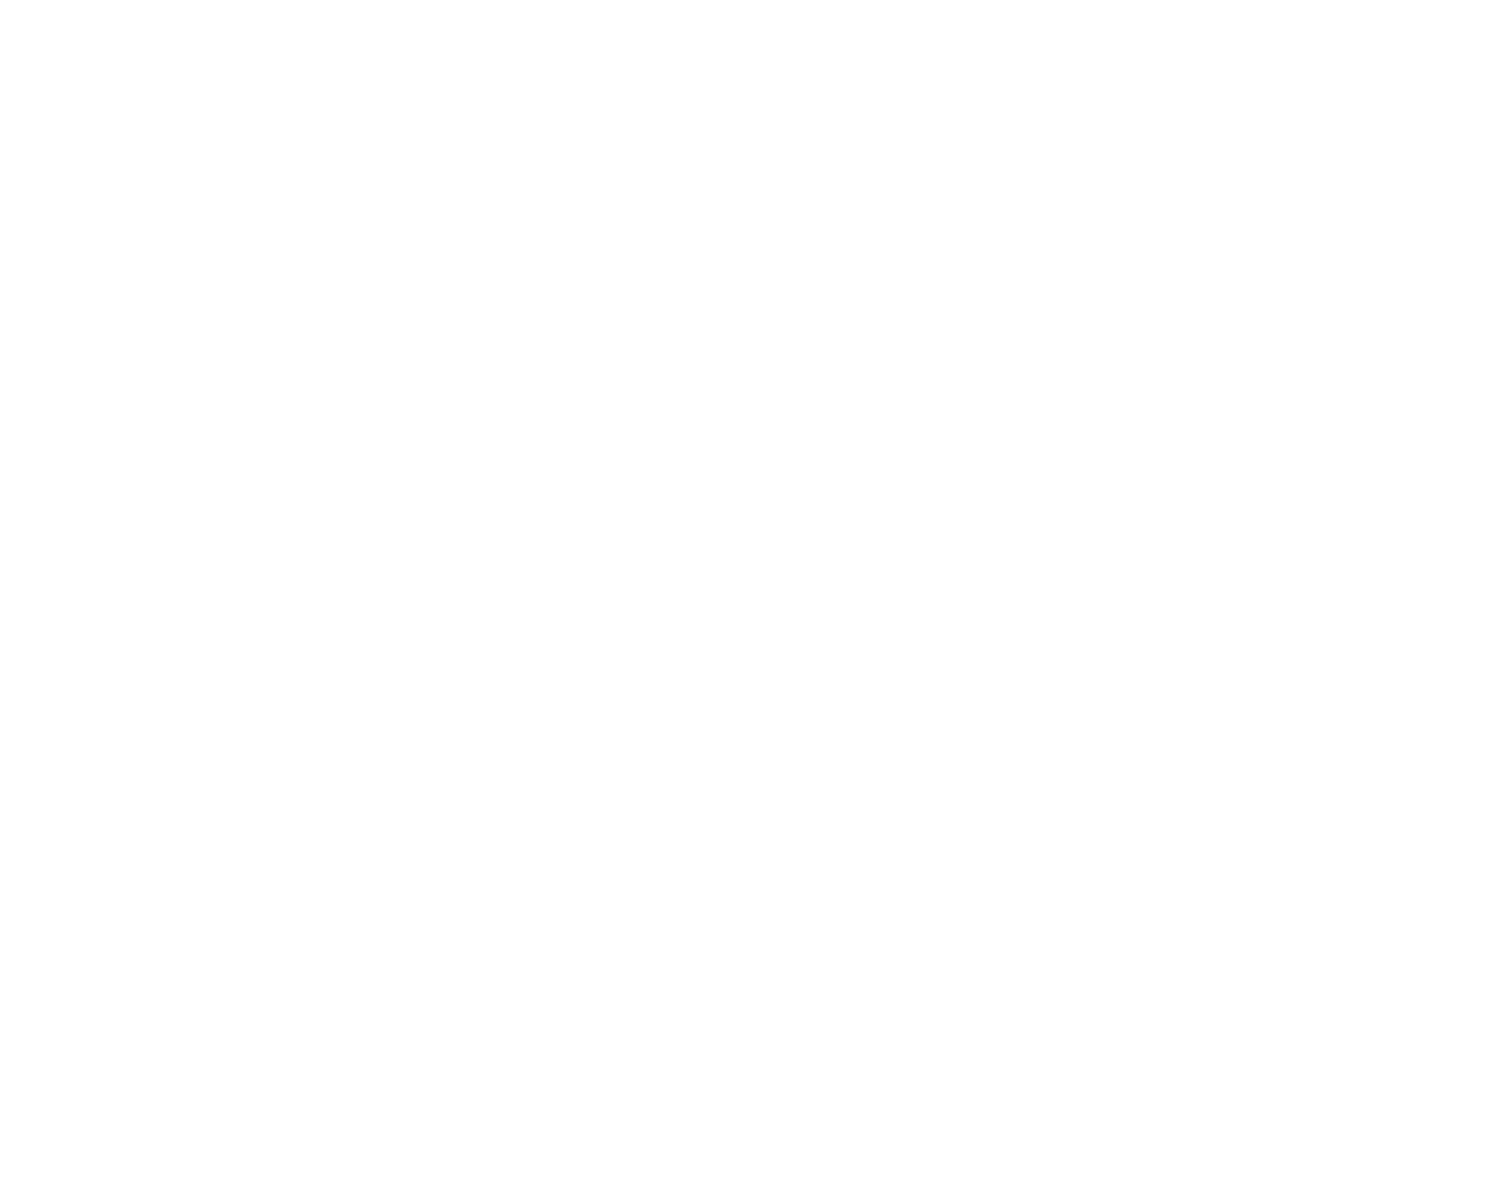 Edgar Allan Joe Coffee